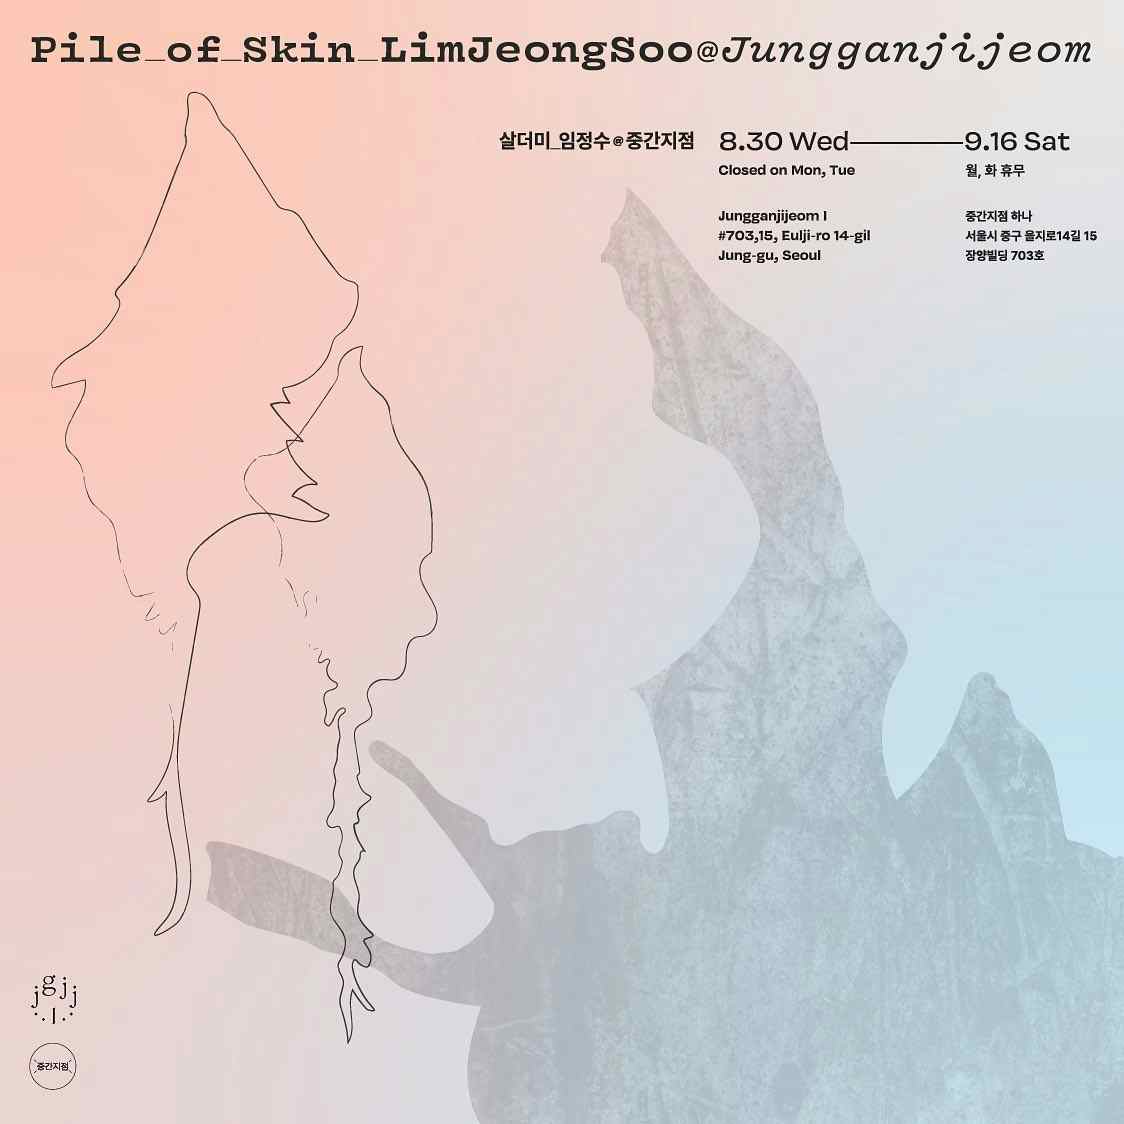 JeongSoo Lim: Pile of Skin